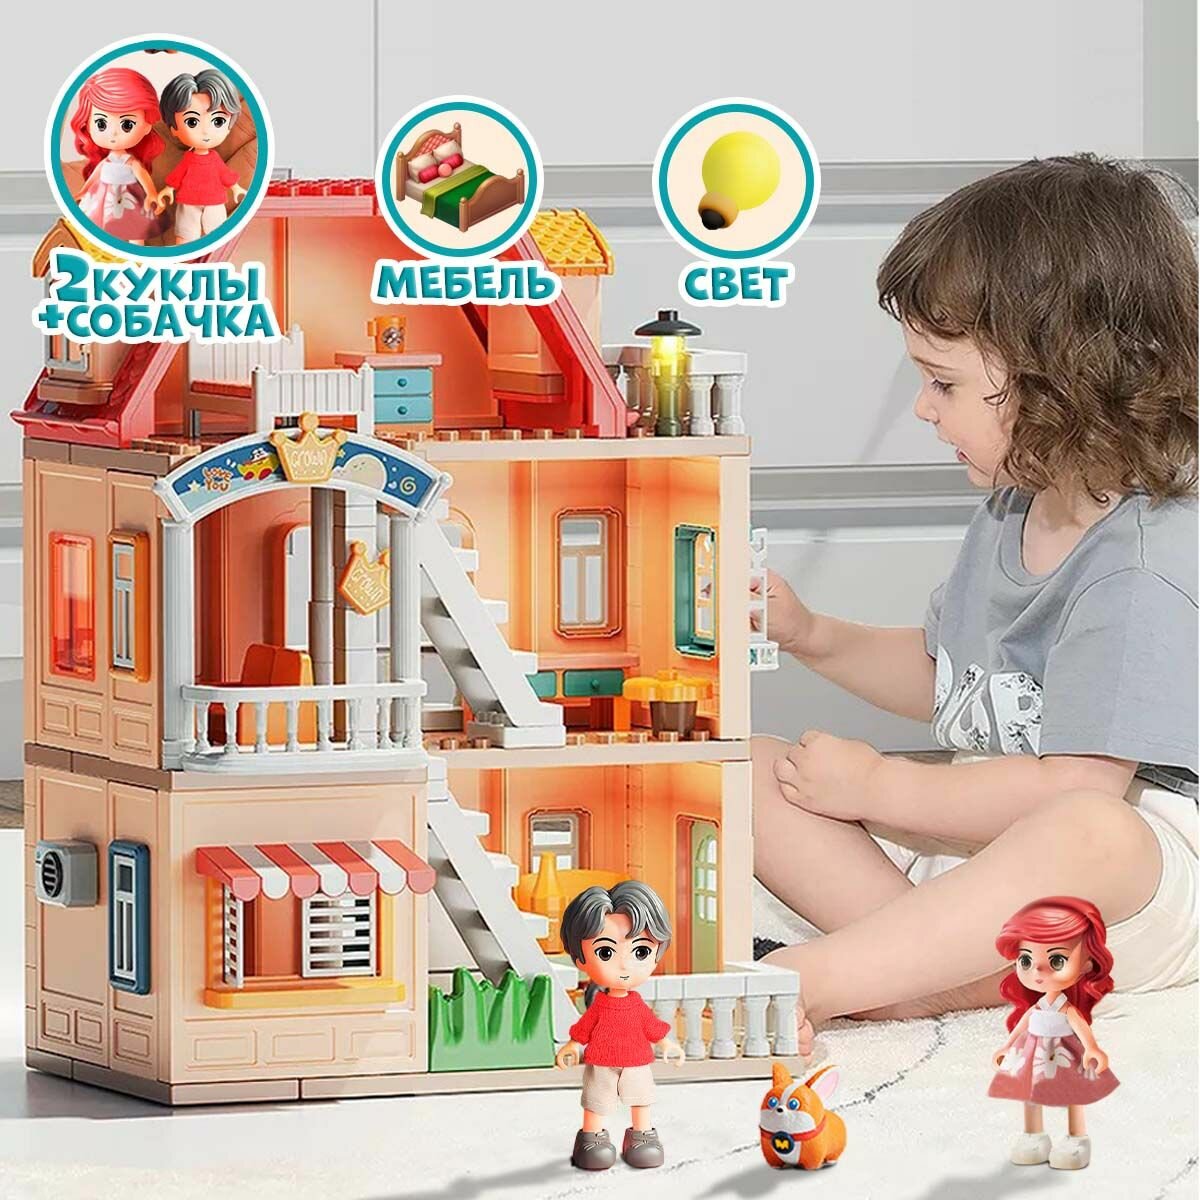 Кукольный домик с мебелью, куклами и подсветкой WiMi, большой игровой набор, 186 деталей